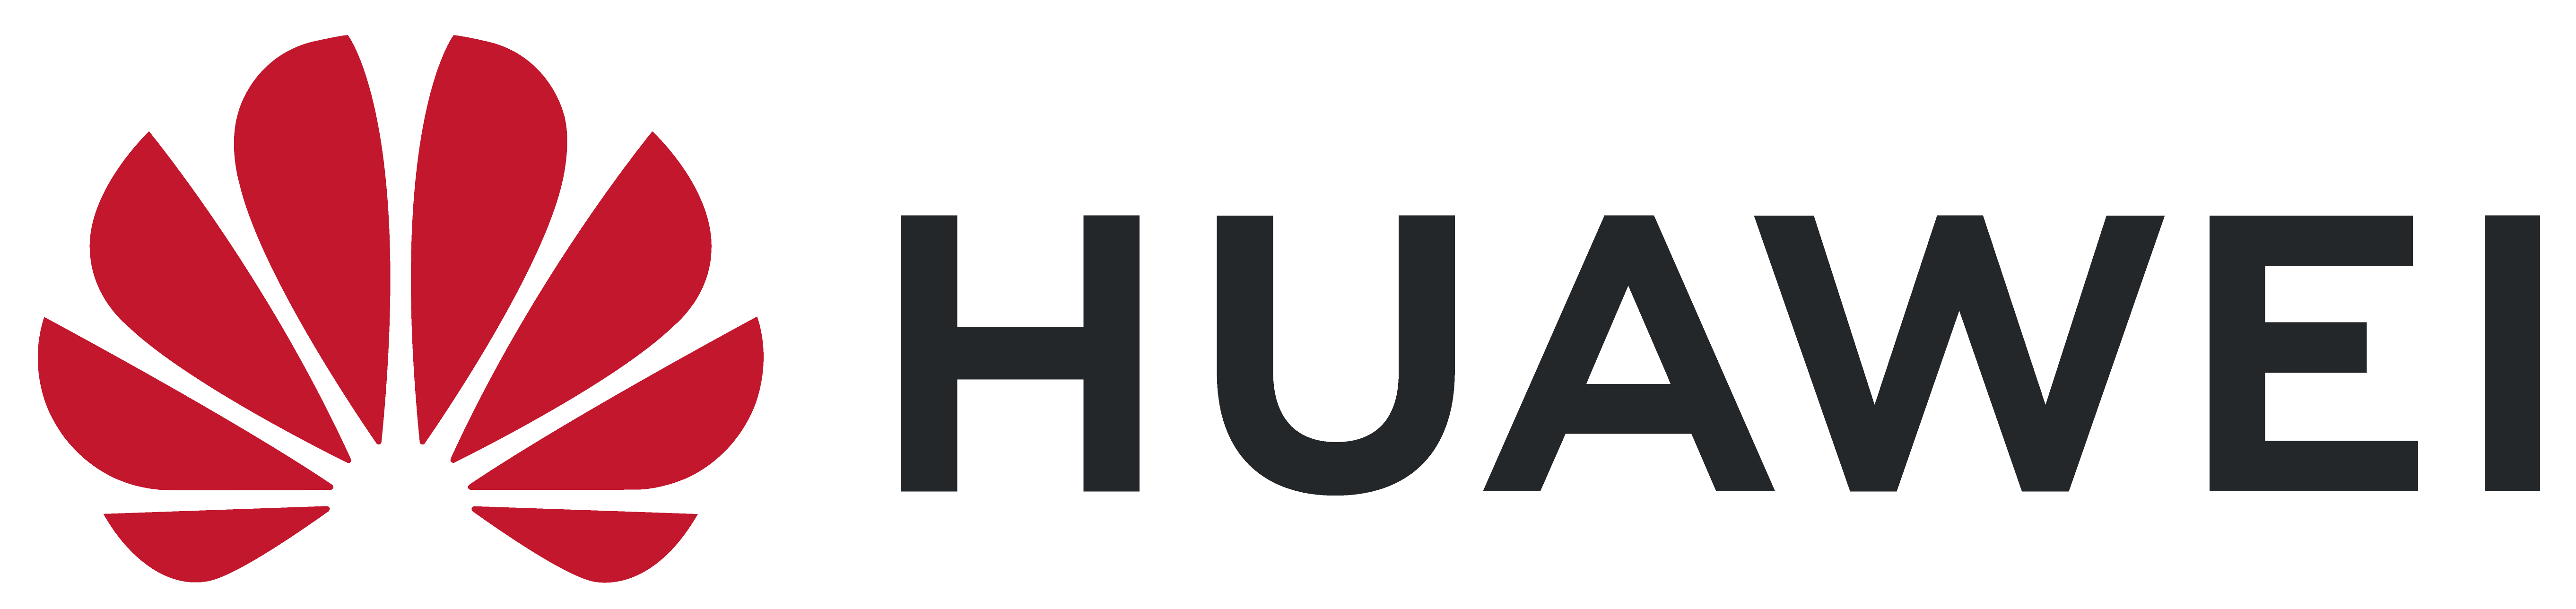 Huawei Banner Logo